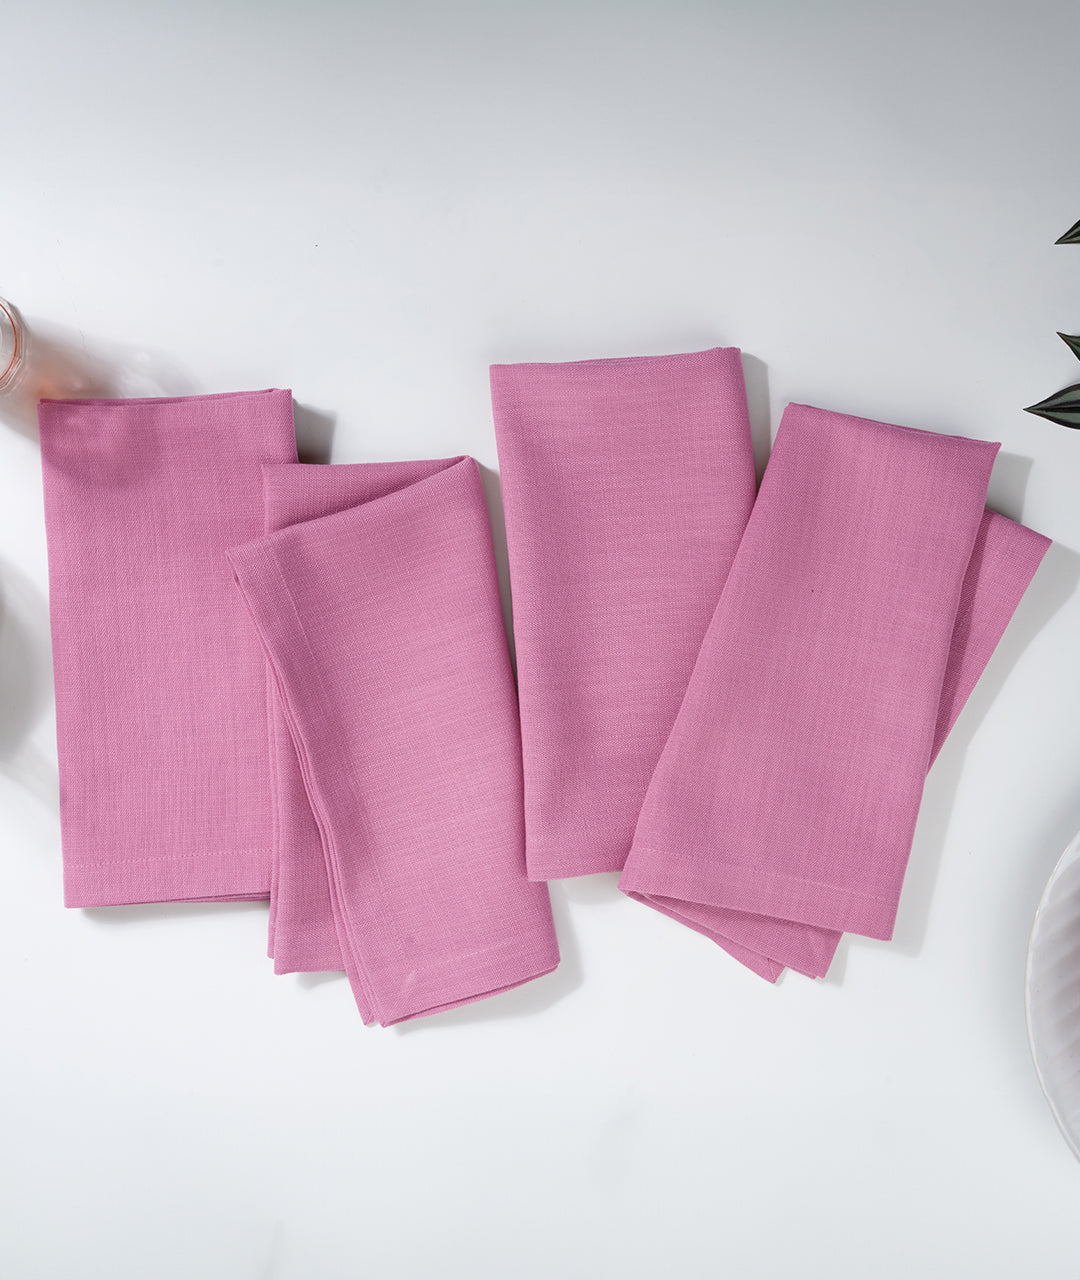 Bubblegum Pink Linen Textured Dinner Napkins 20 x 20 Inch Set of 4 - Mitered Corner